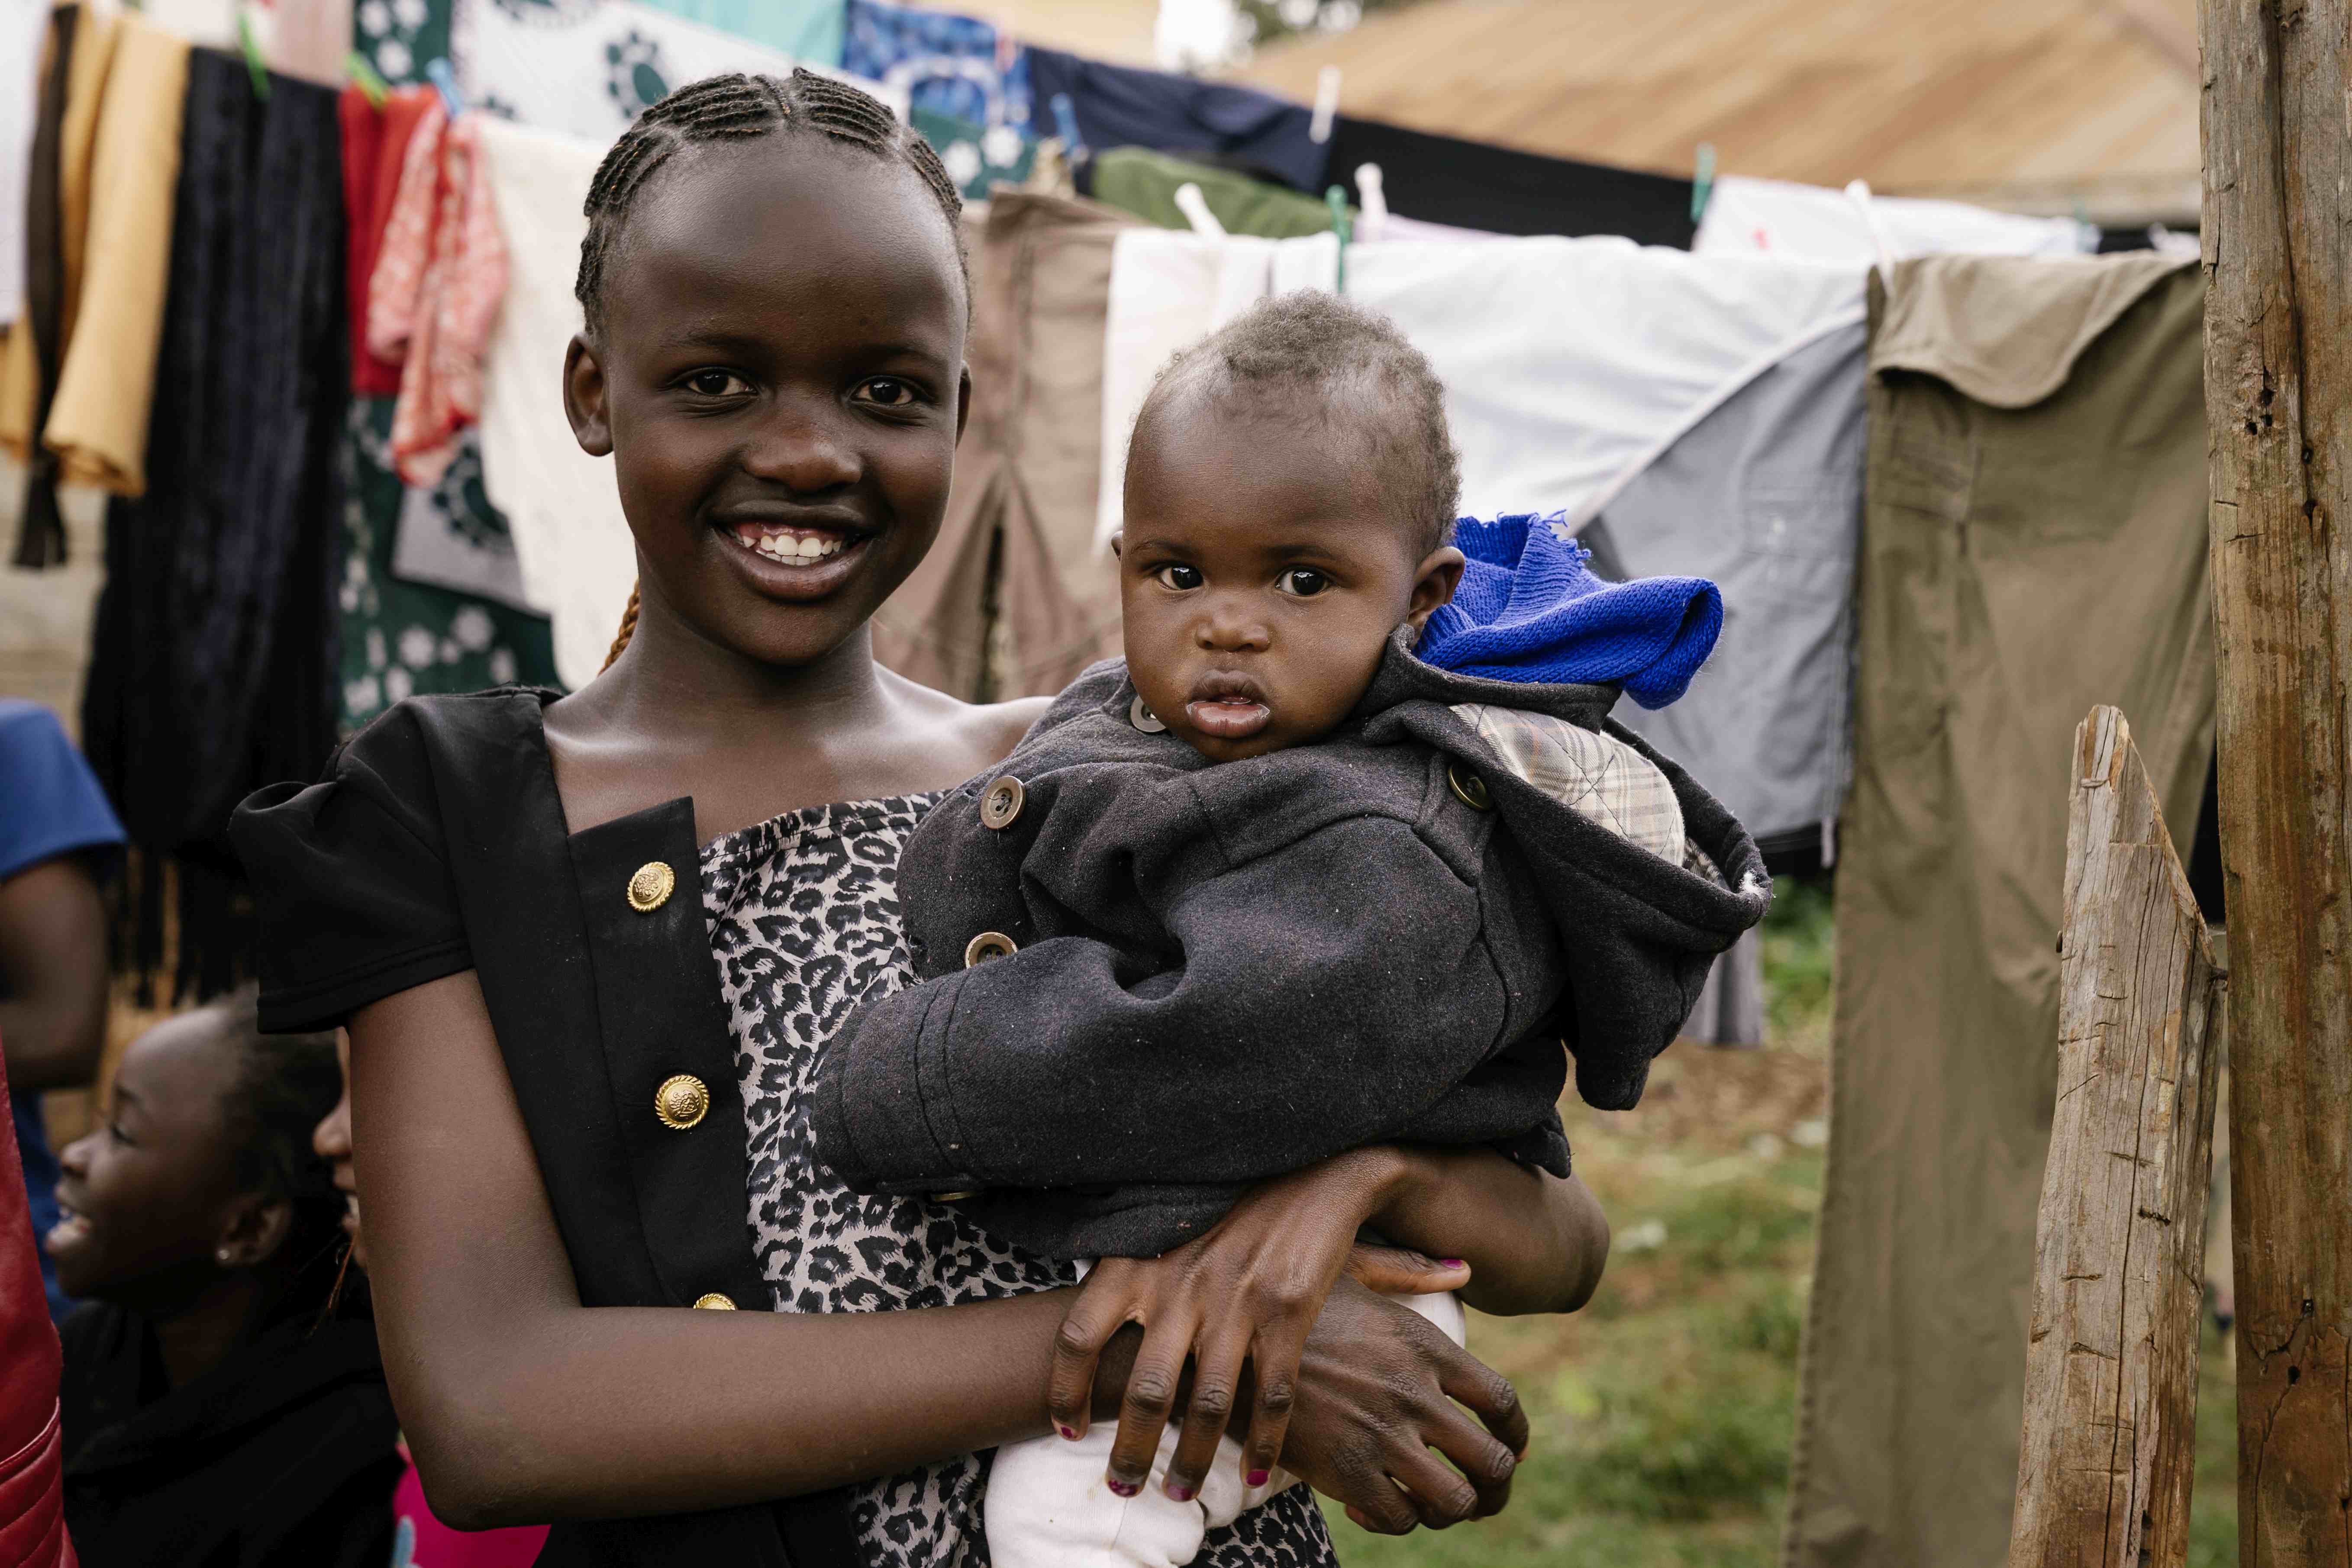 Mädchen mit Baby auf dem Arm steht draußen vor einer Wäscheleine mit Wäsche  (Bildquelle: Dan Zoubek)